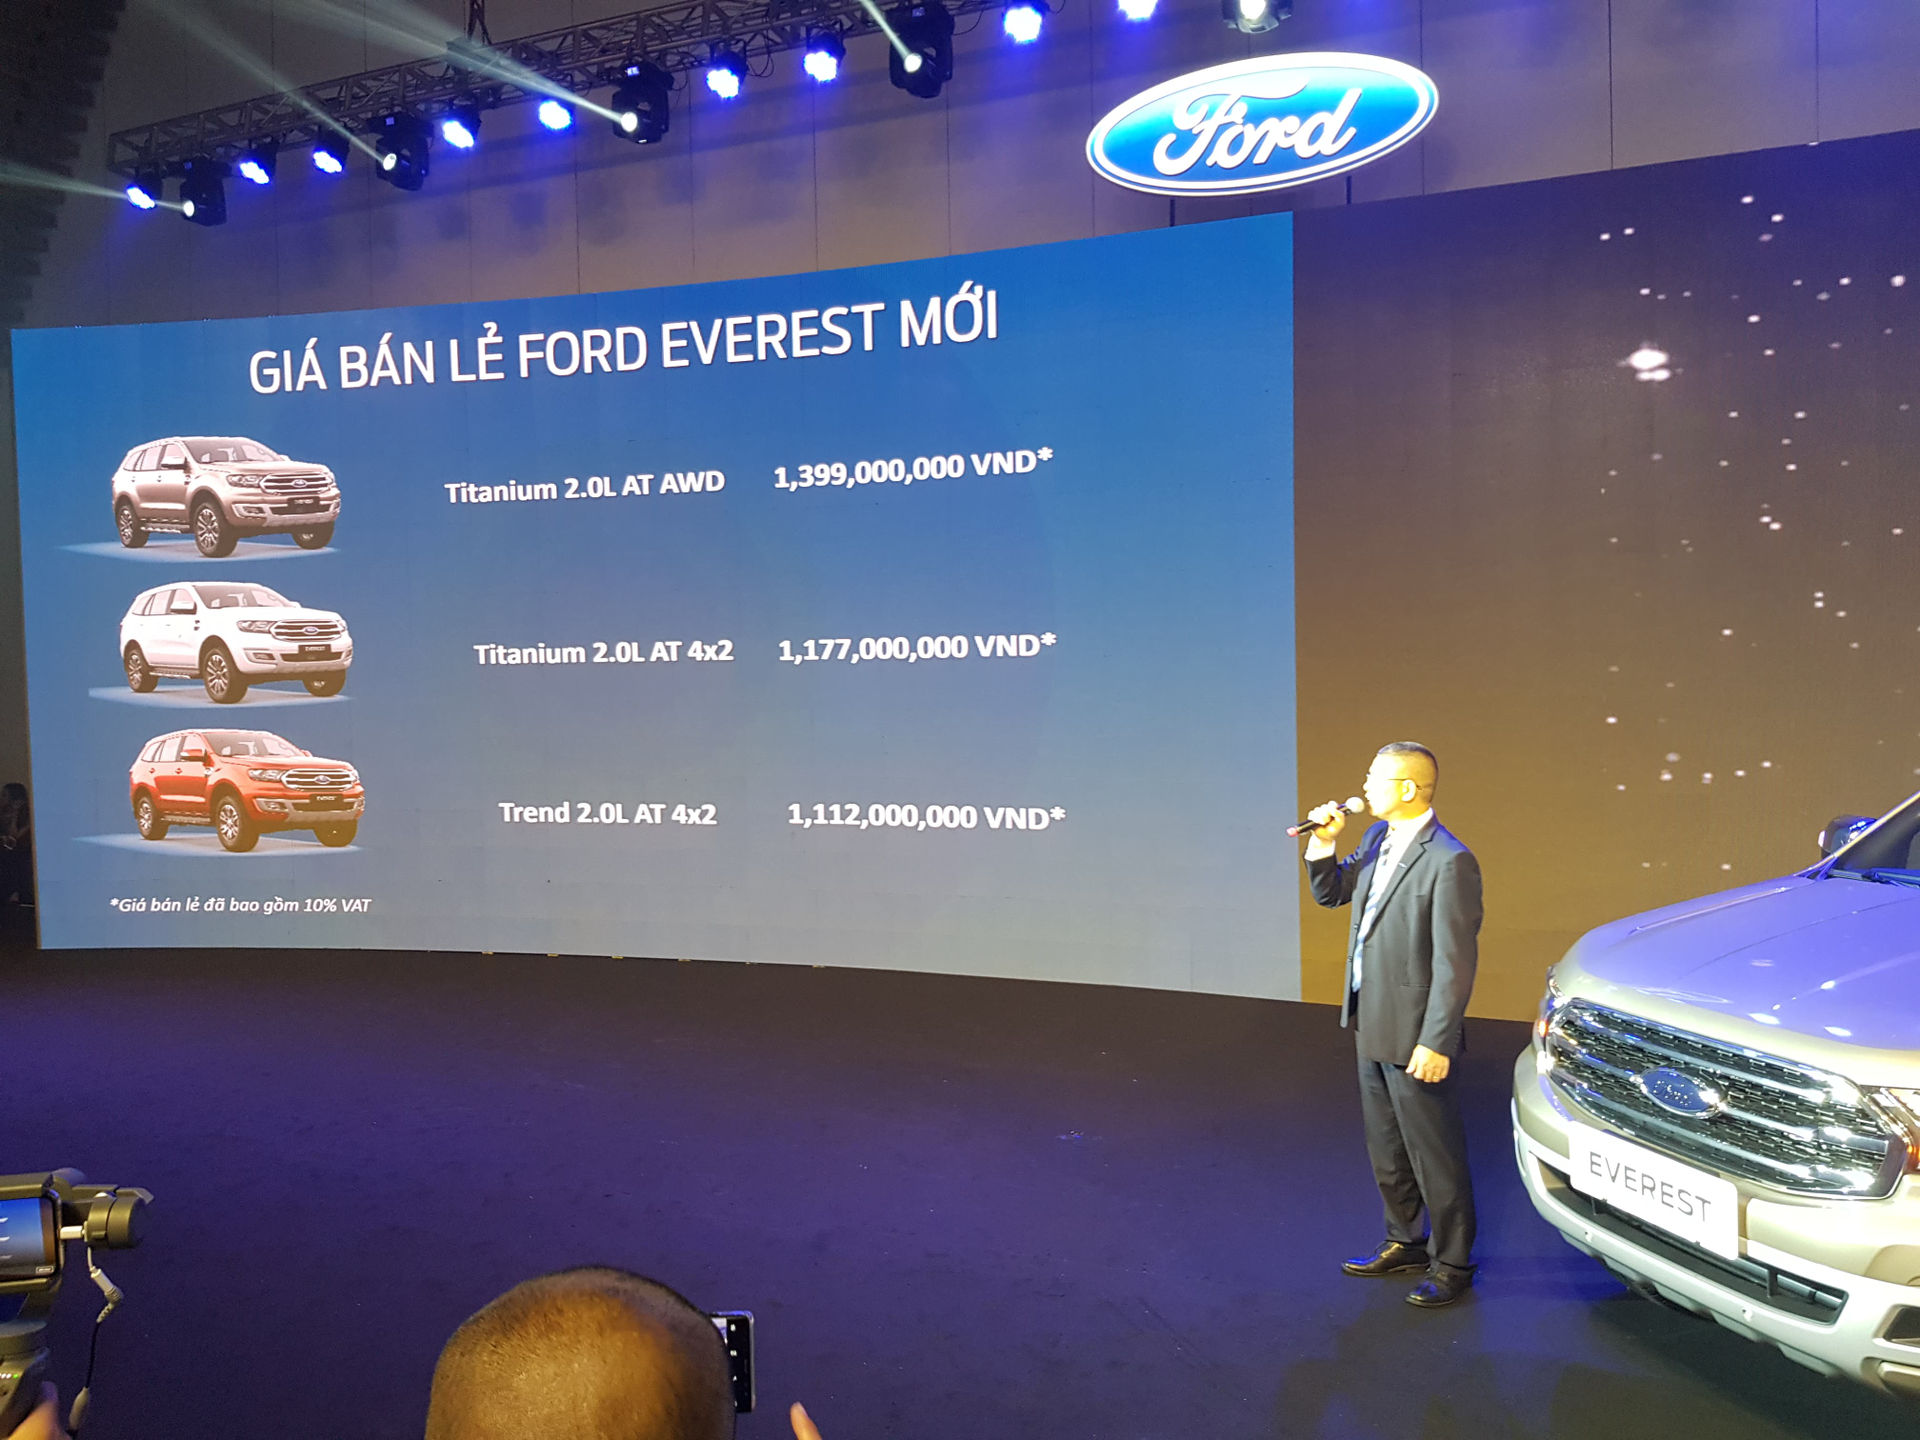 Giá bán các phiên bản Ford Everest mới tại thị trường Việt Nam. Ảnh. H.B